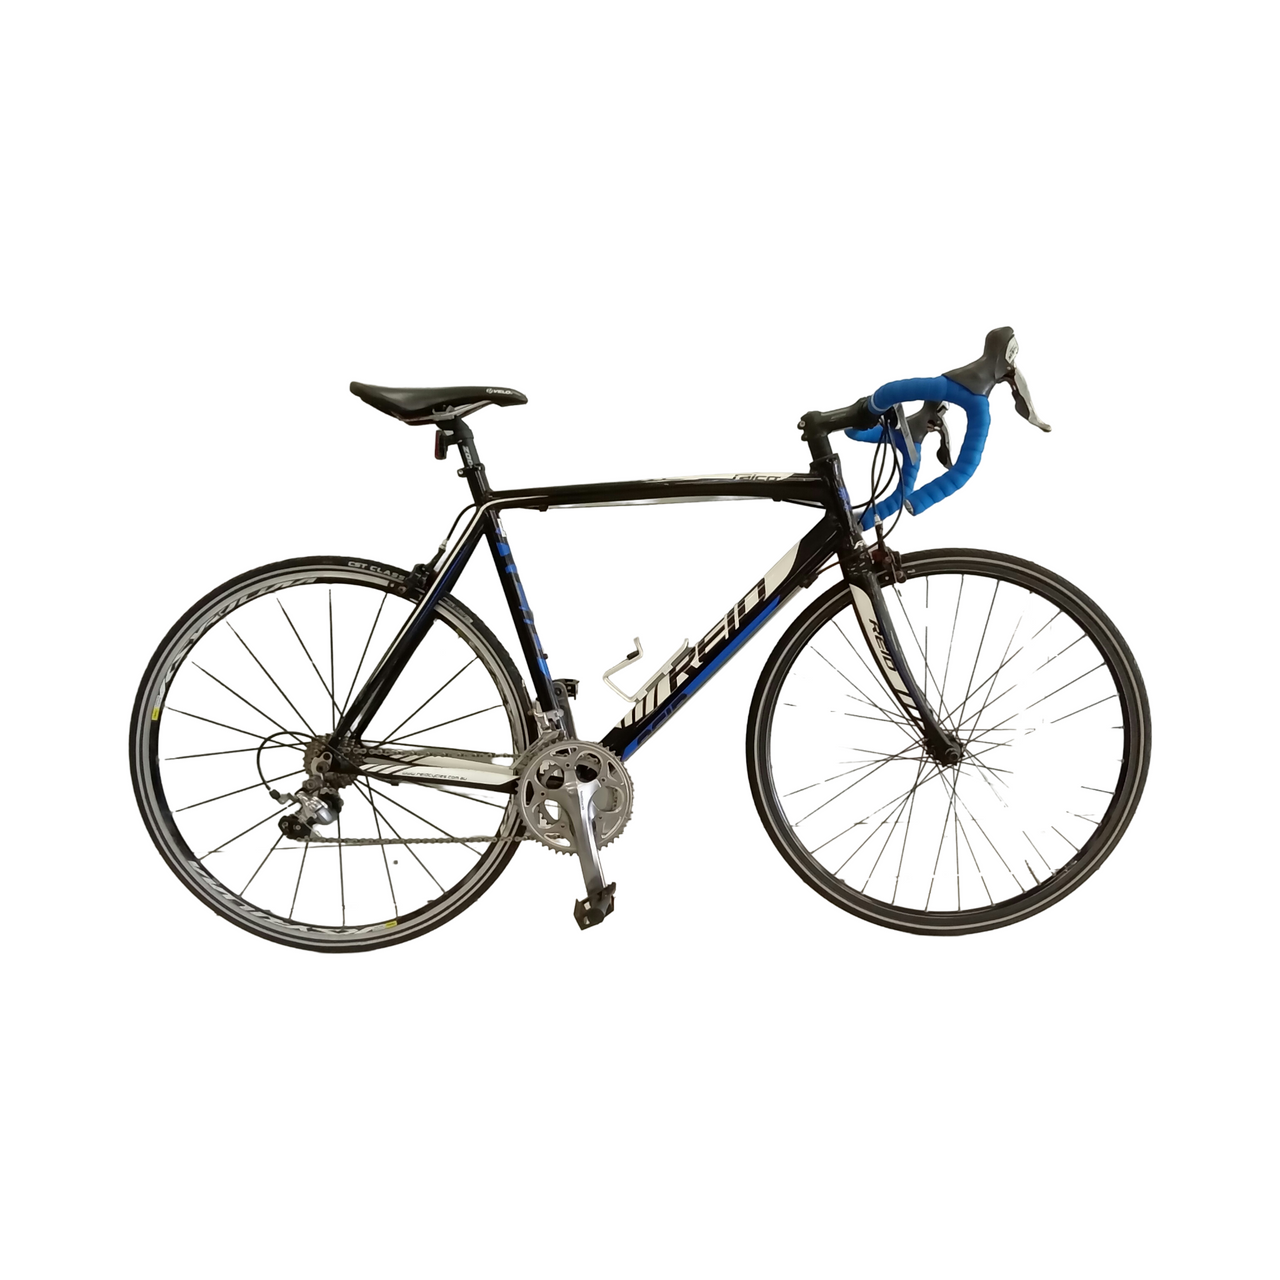 1707 - 55cm Black,
Blue, Road Bike, Bike